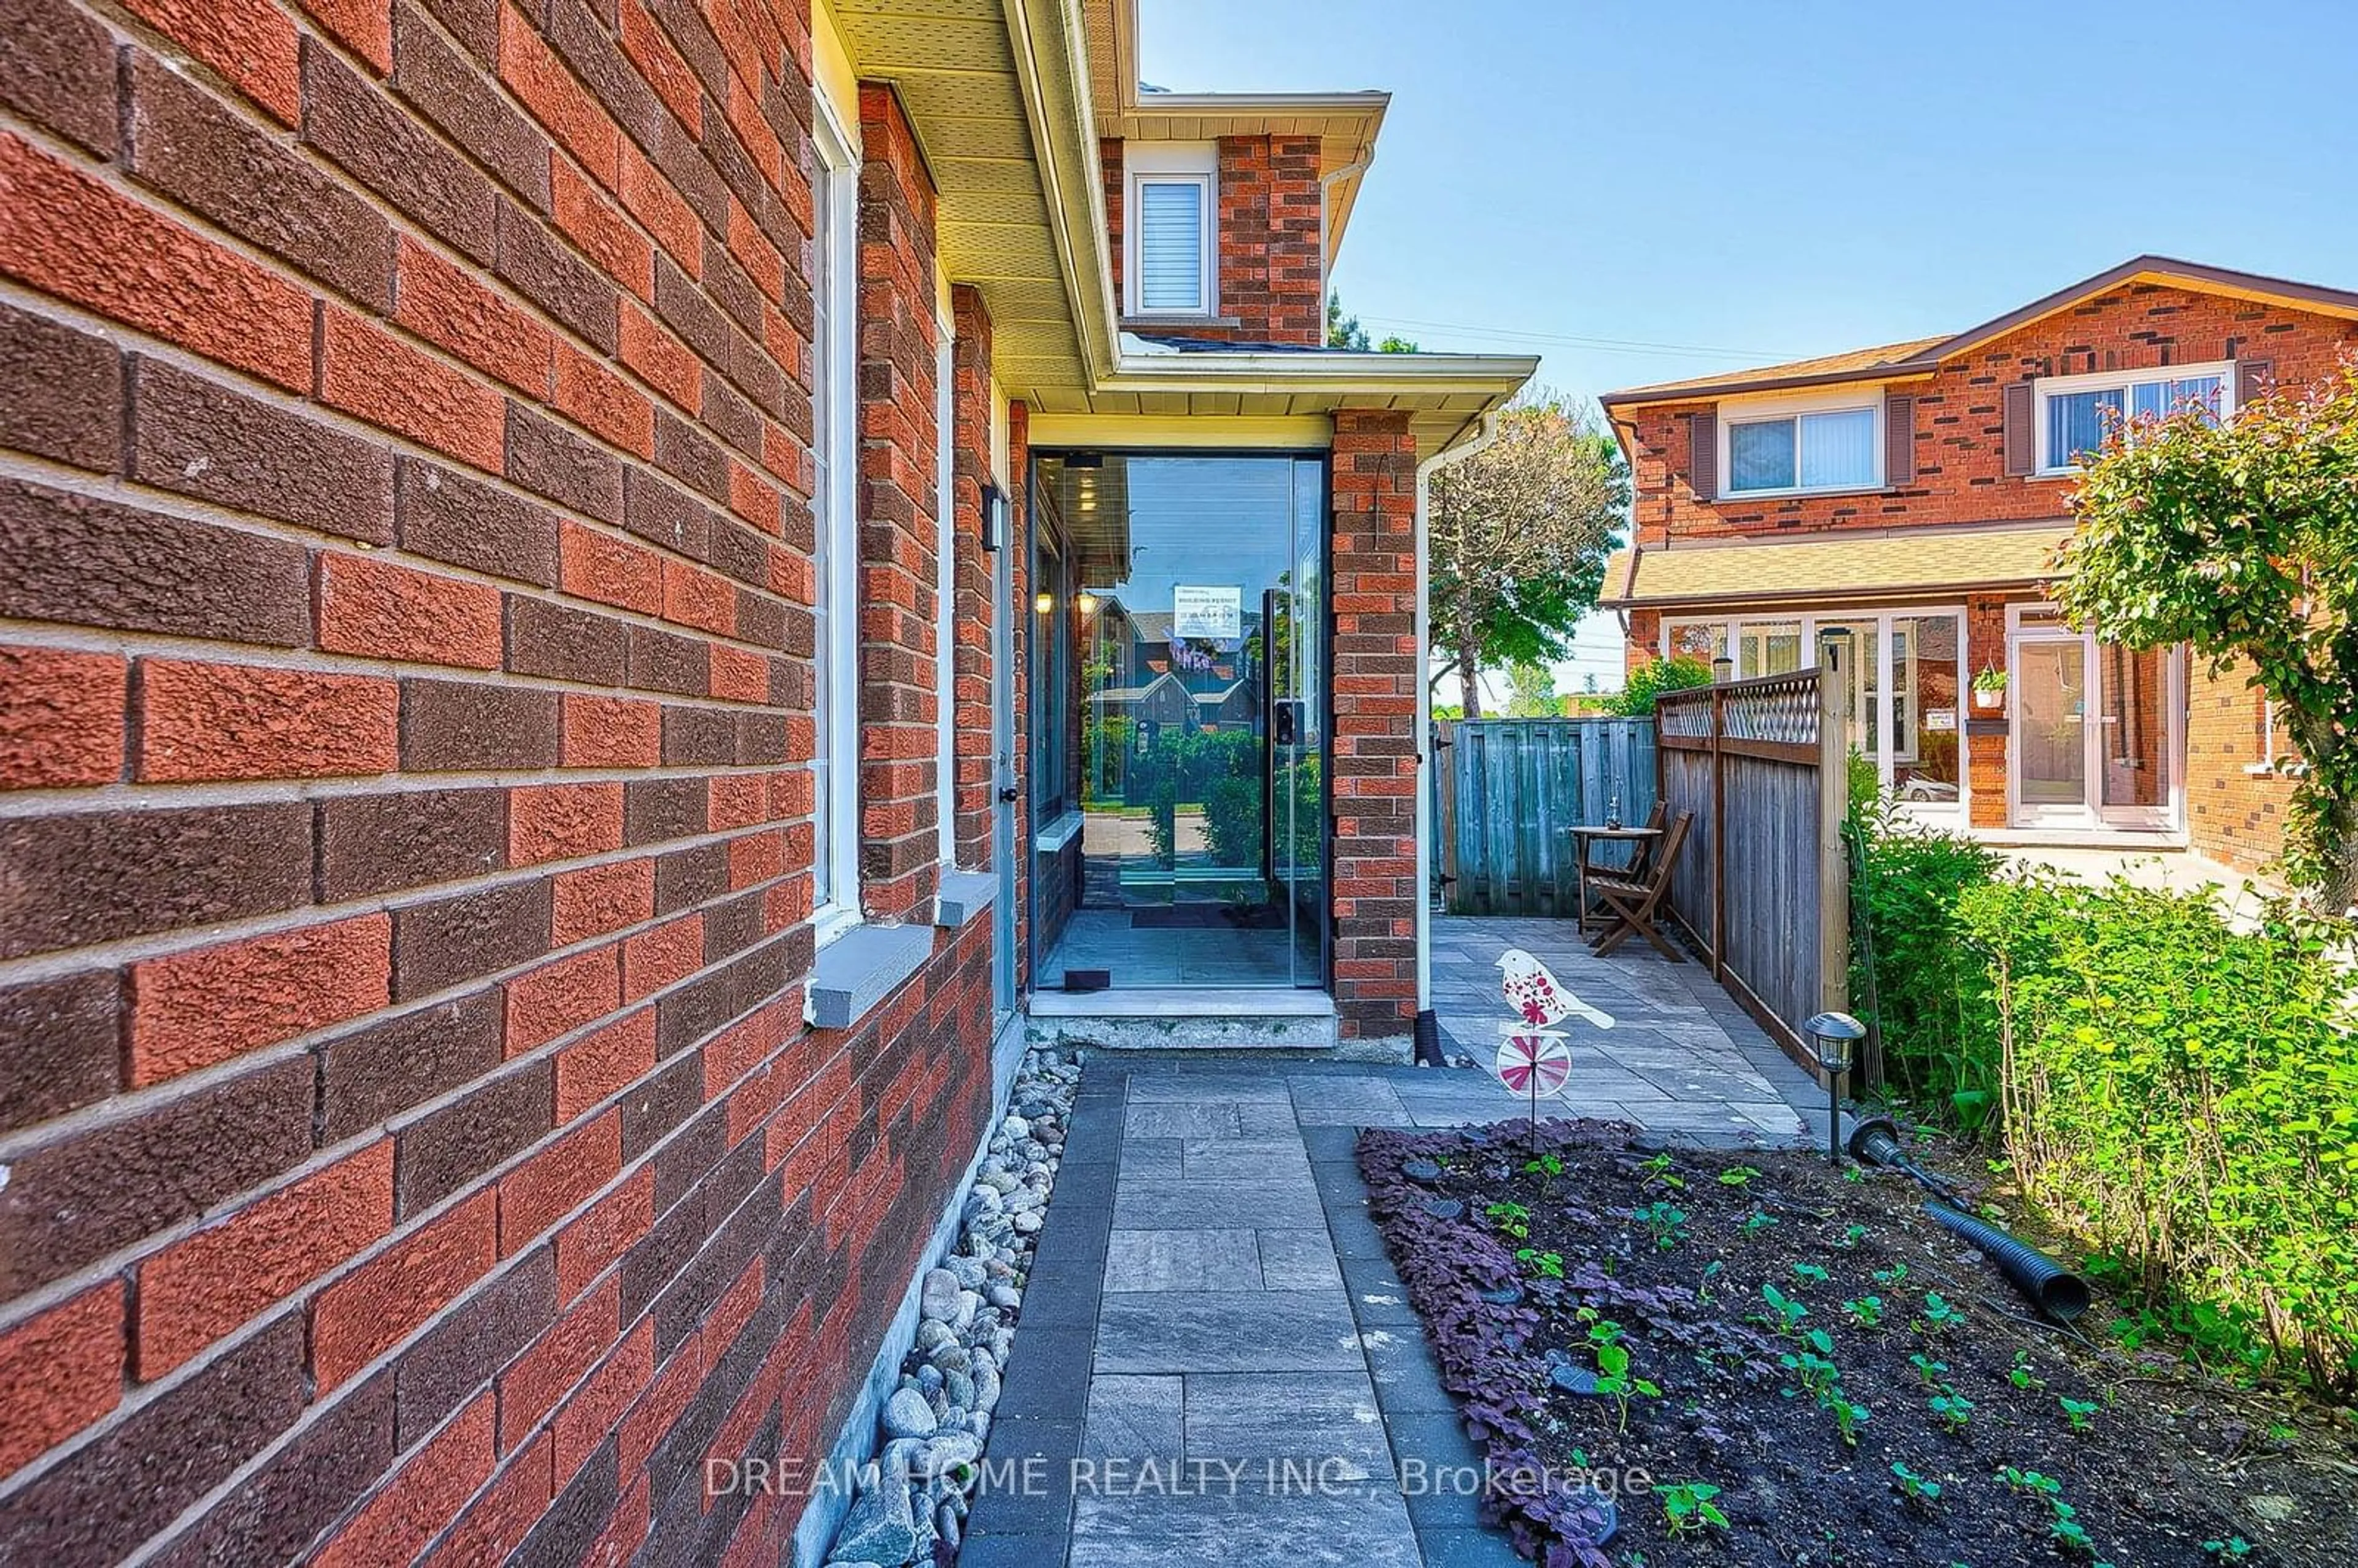 Home with brick exterior material for 48 Wharton Sq, Toronto Ontario M1V 4N5